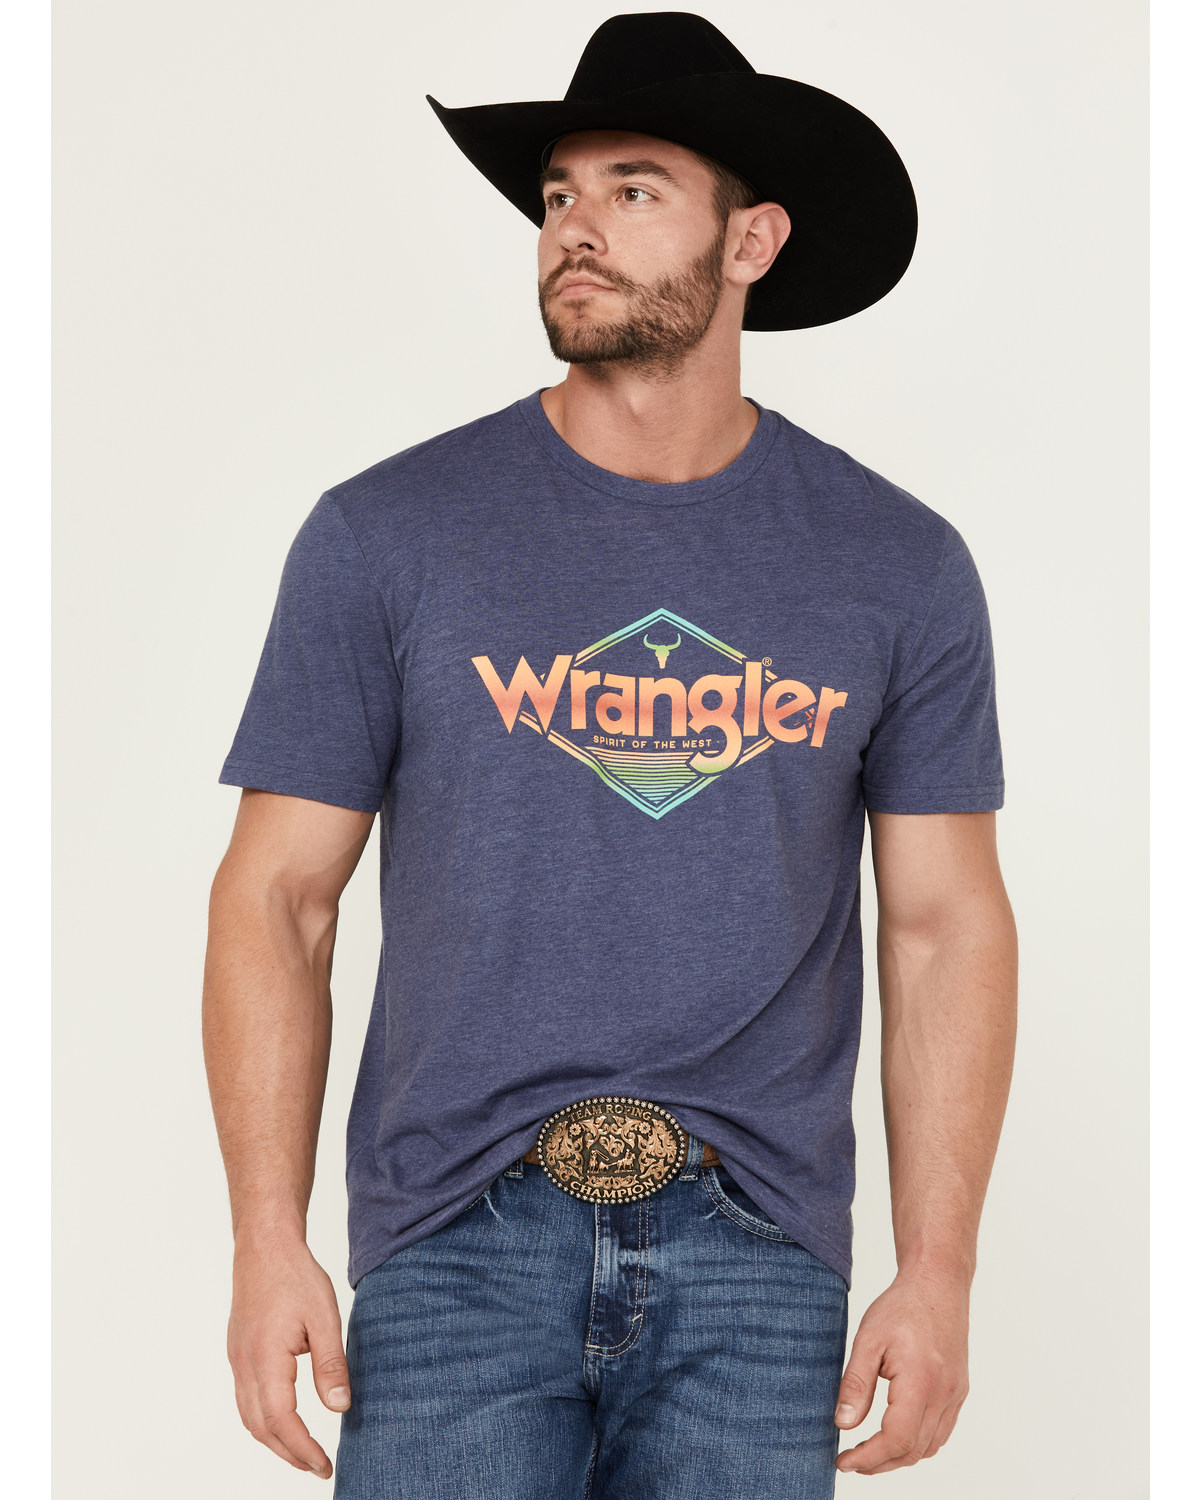 Wrangler Men's Retro Logo Short Sleeve Graphic Print T-Shirt